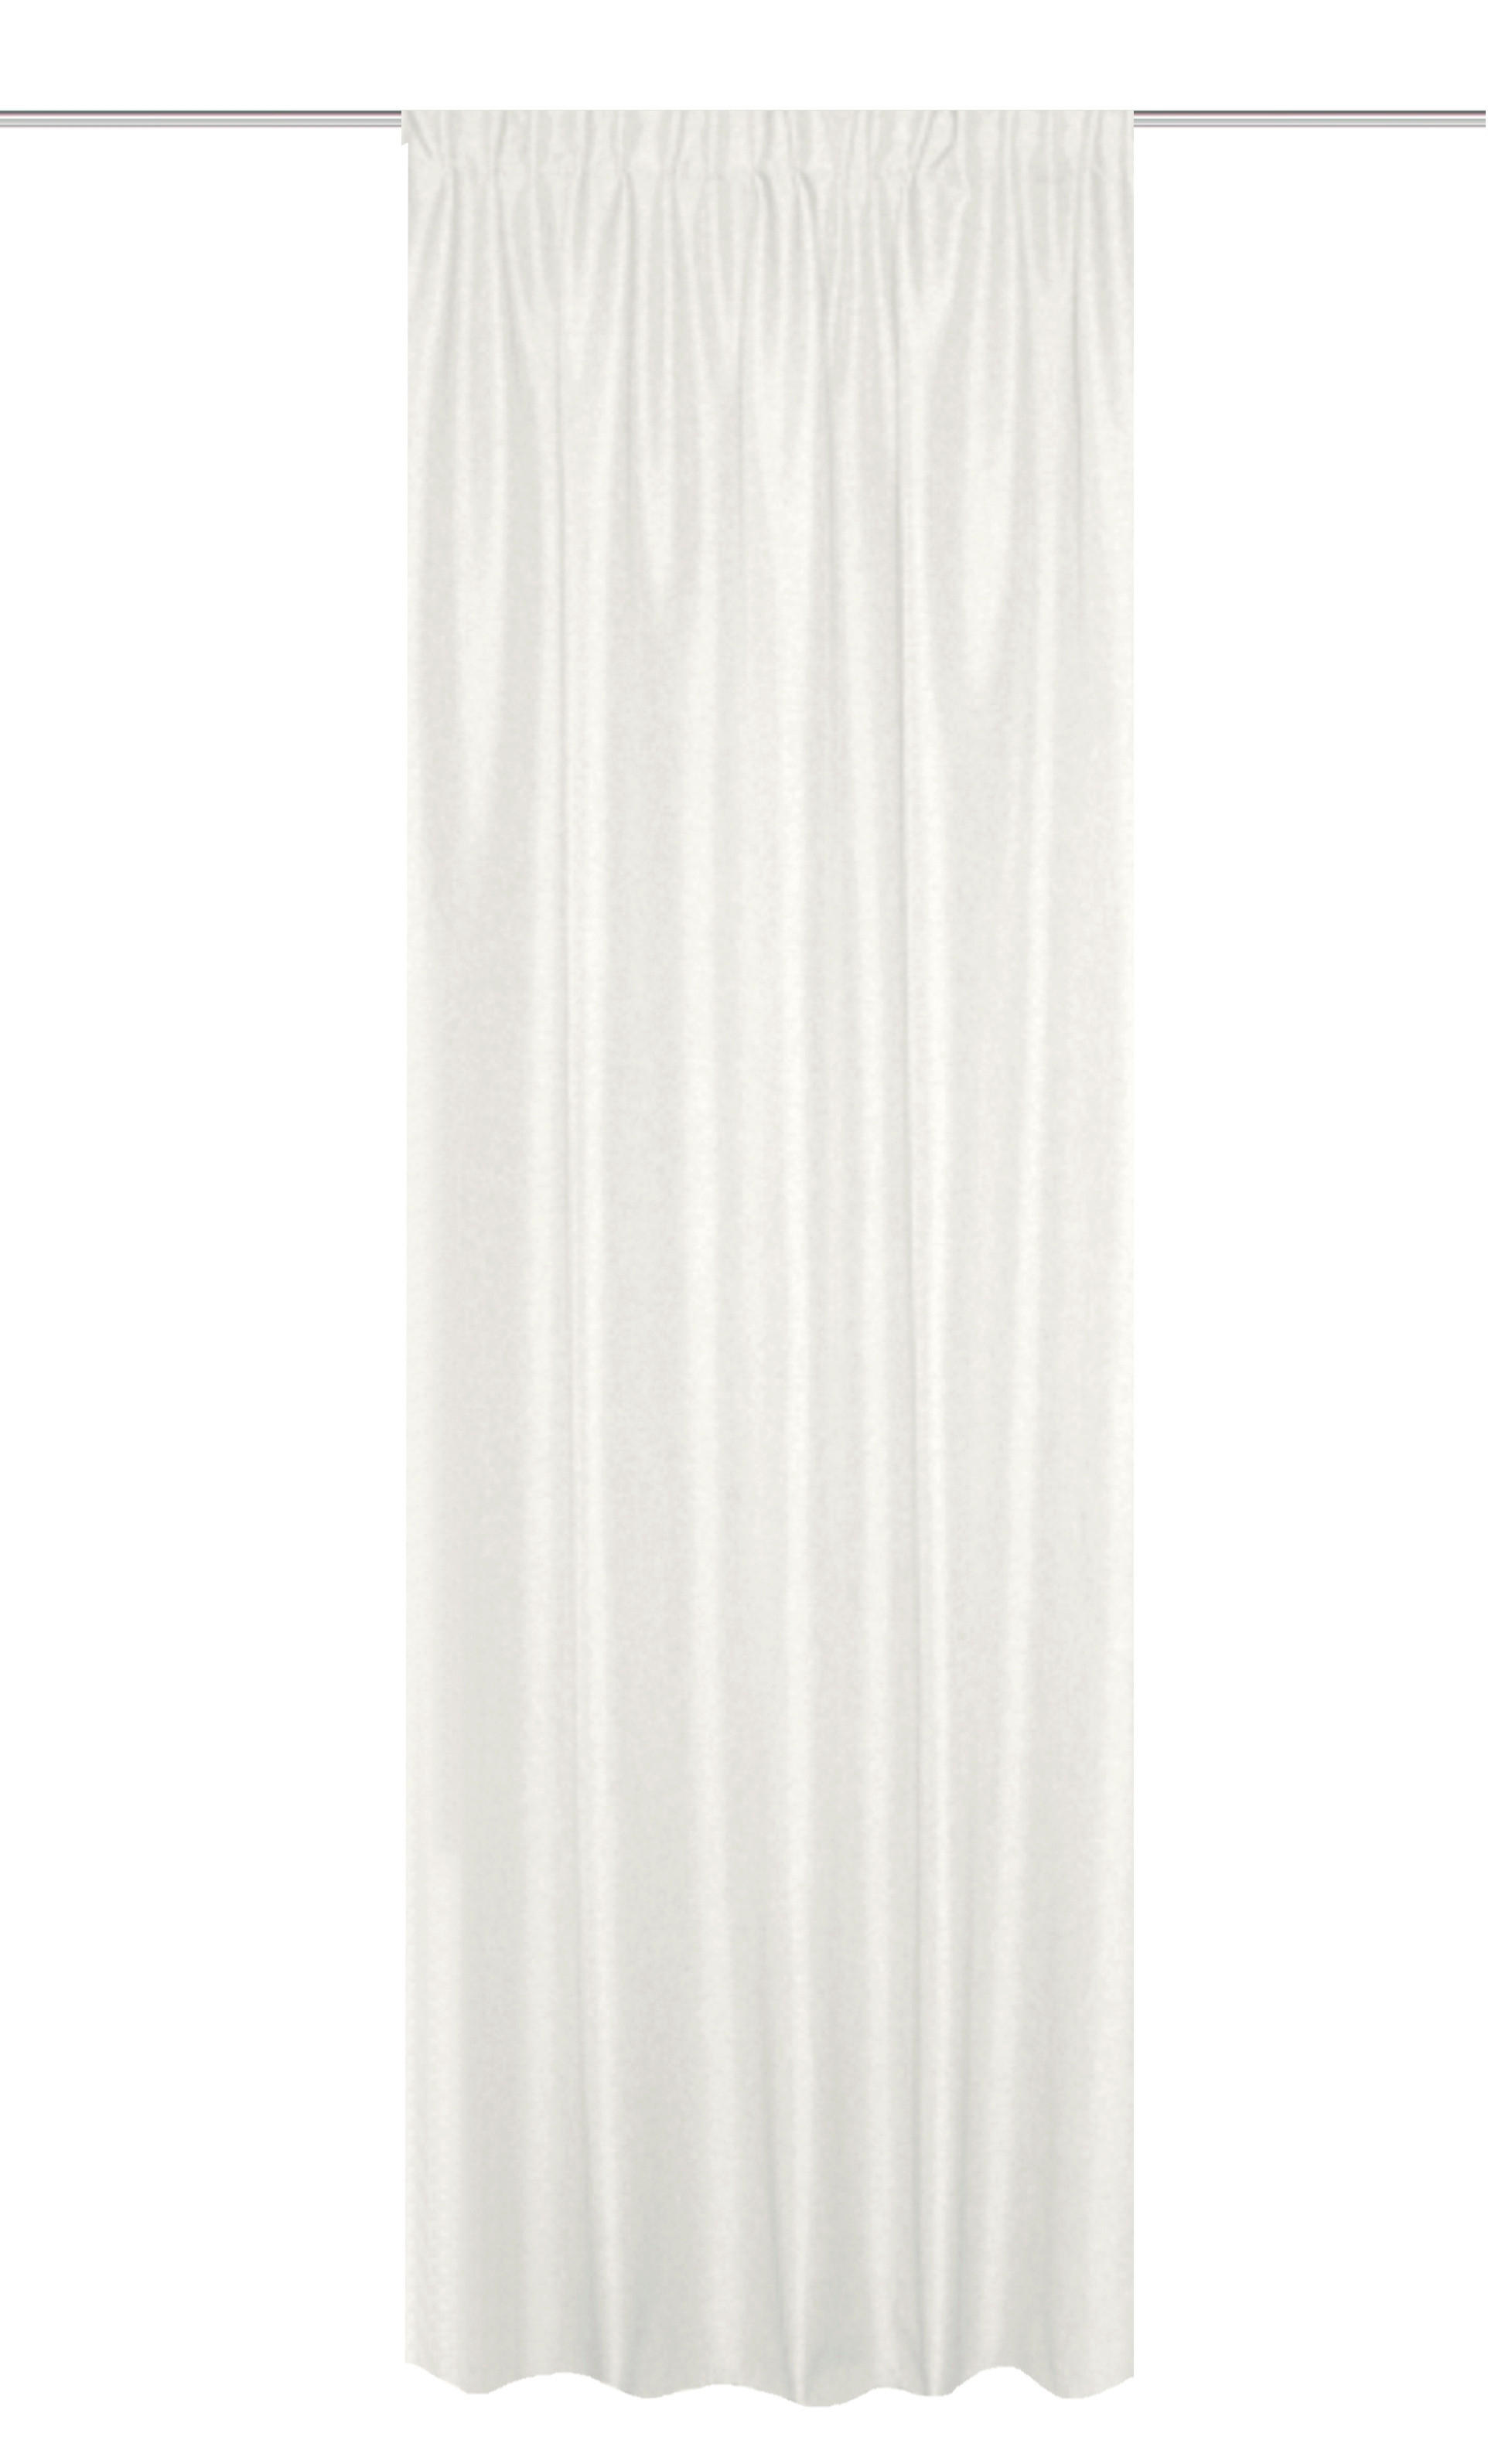 WÄRMESCHUTZVORHANG  blickdicht  135/175 cm   - Weiß, Basics, Textil (135/175cm)